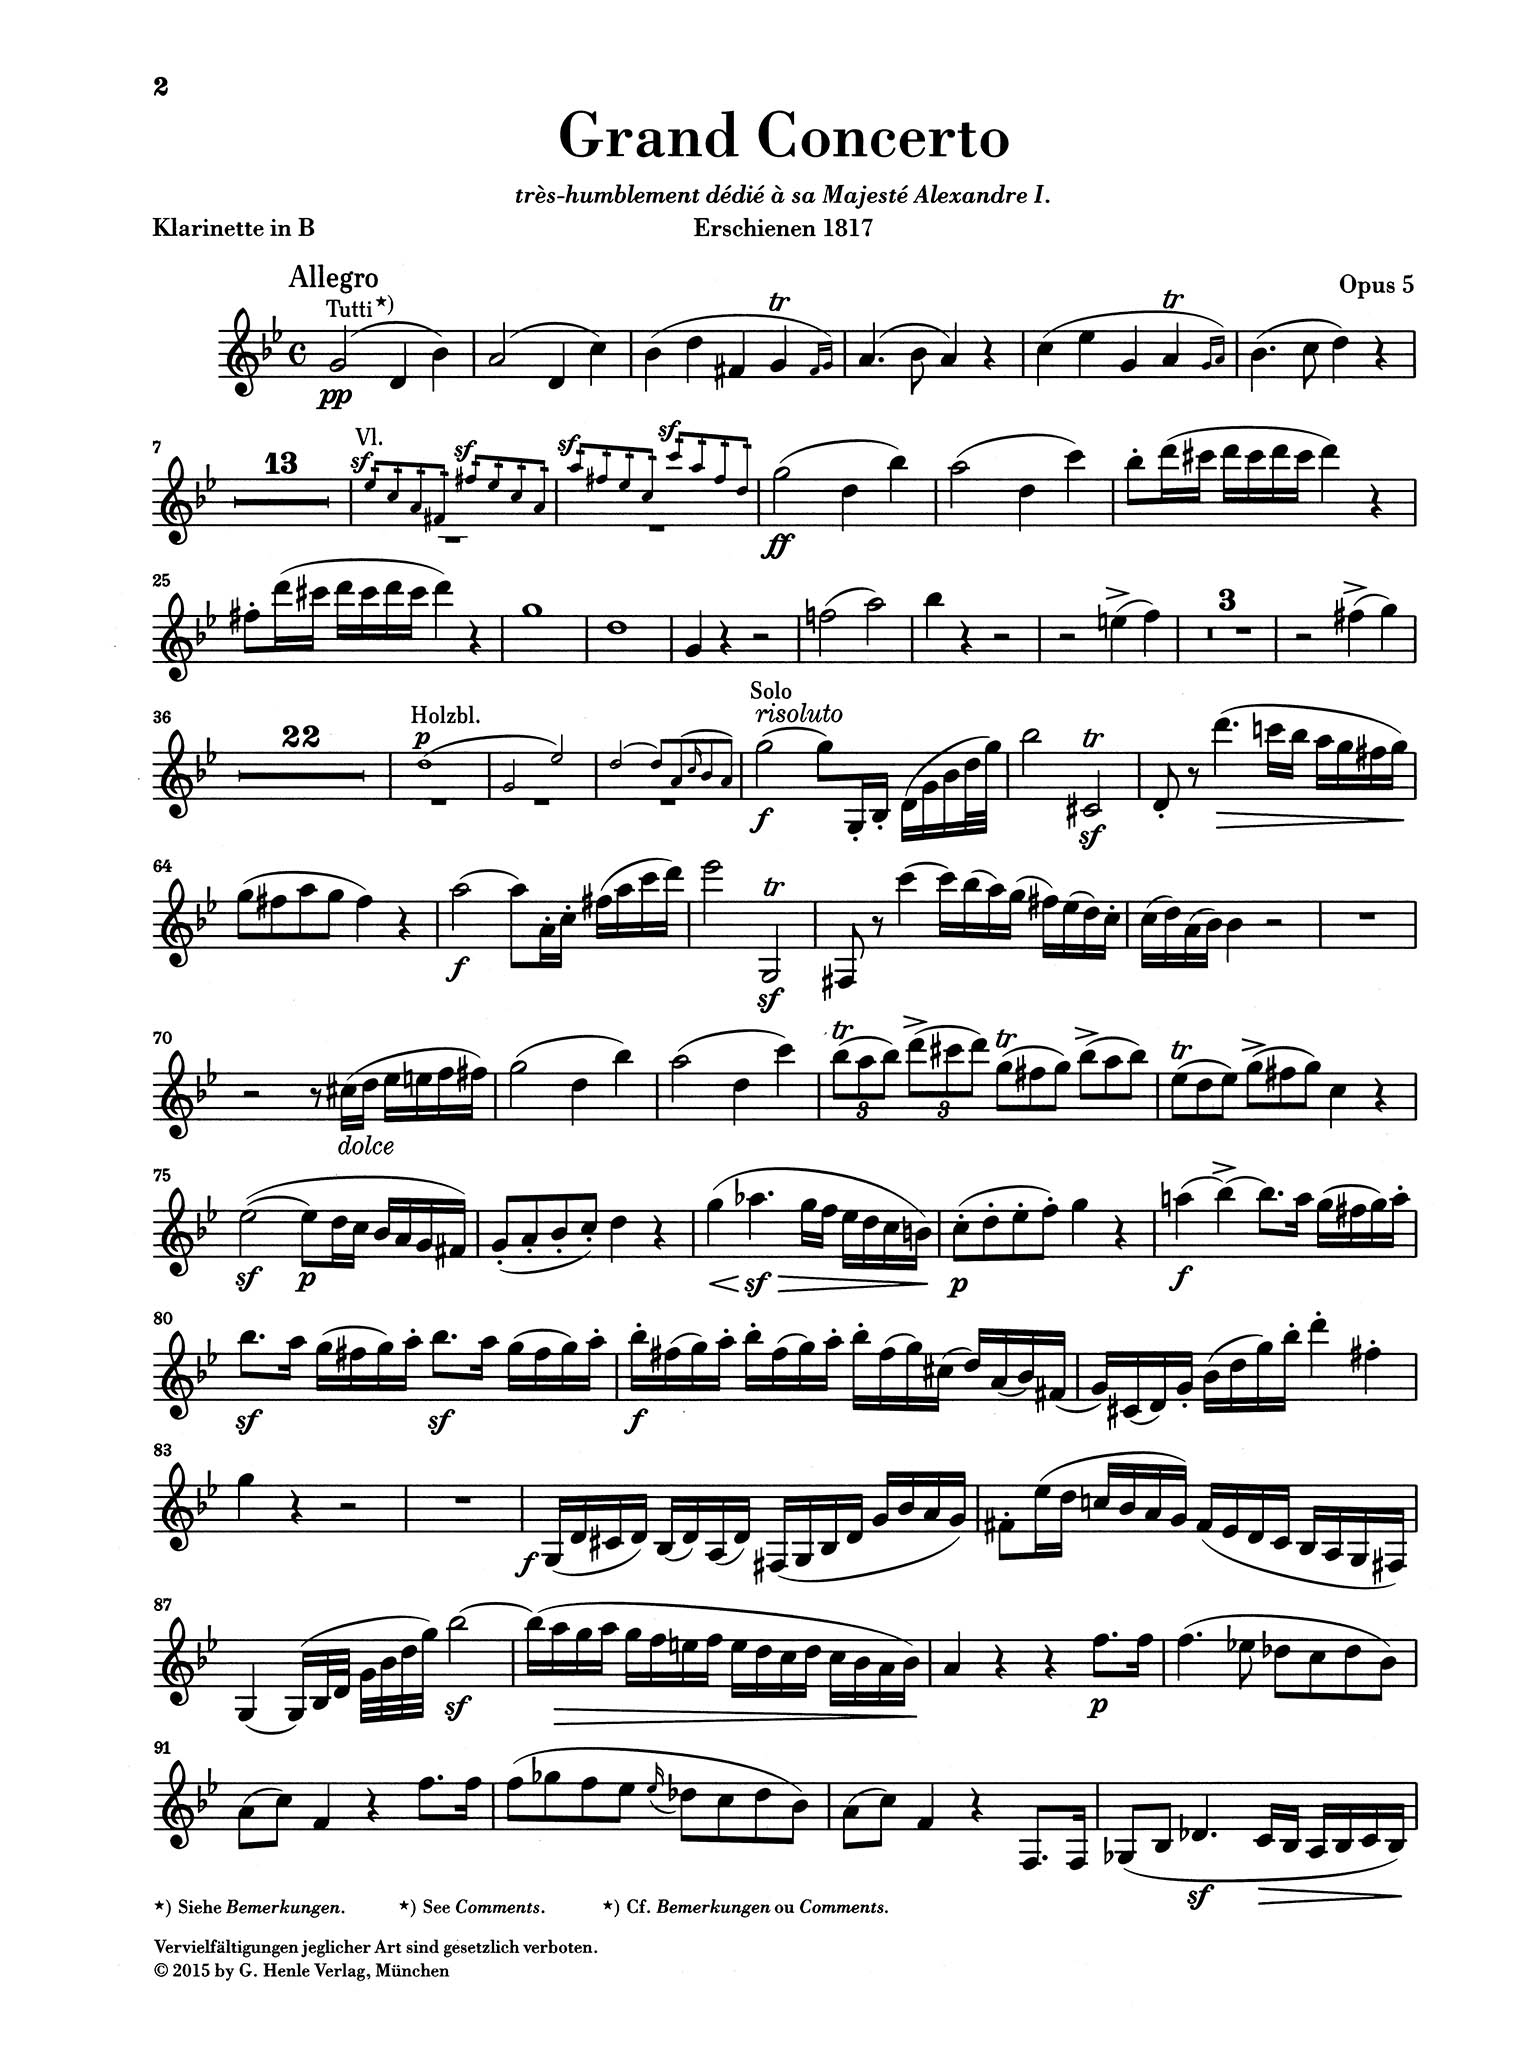 Clarinet Concerto No. 2 in F Minor 'Grand Concerto', Op. 5 Clarinet part